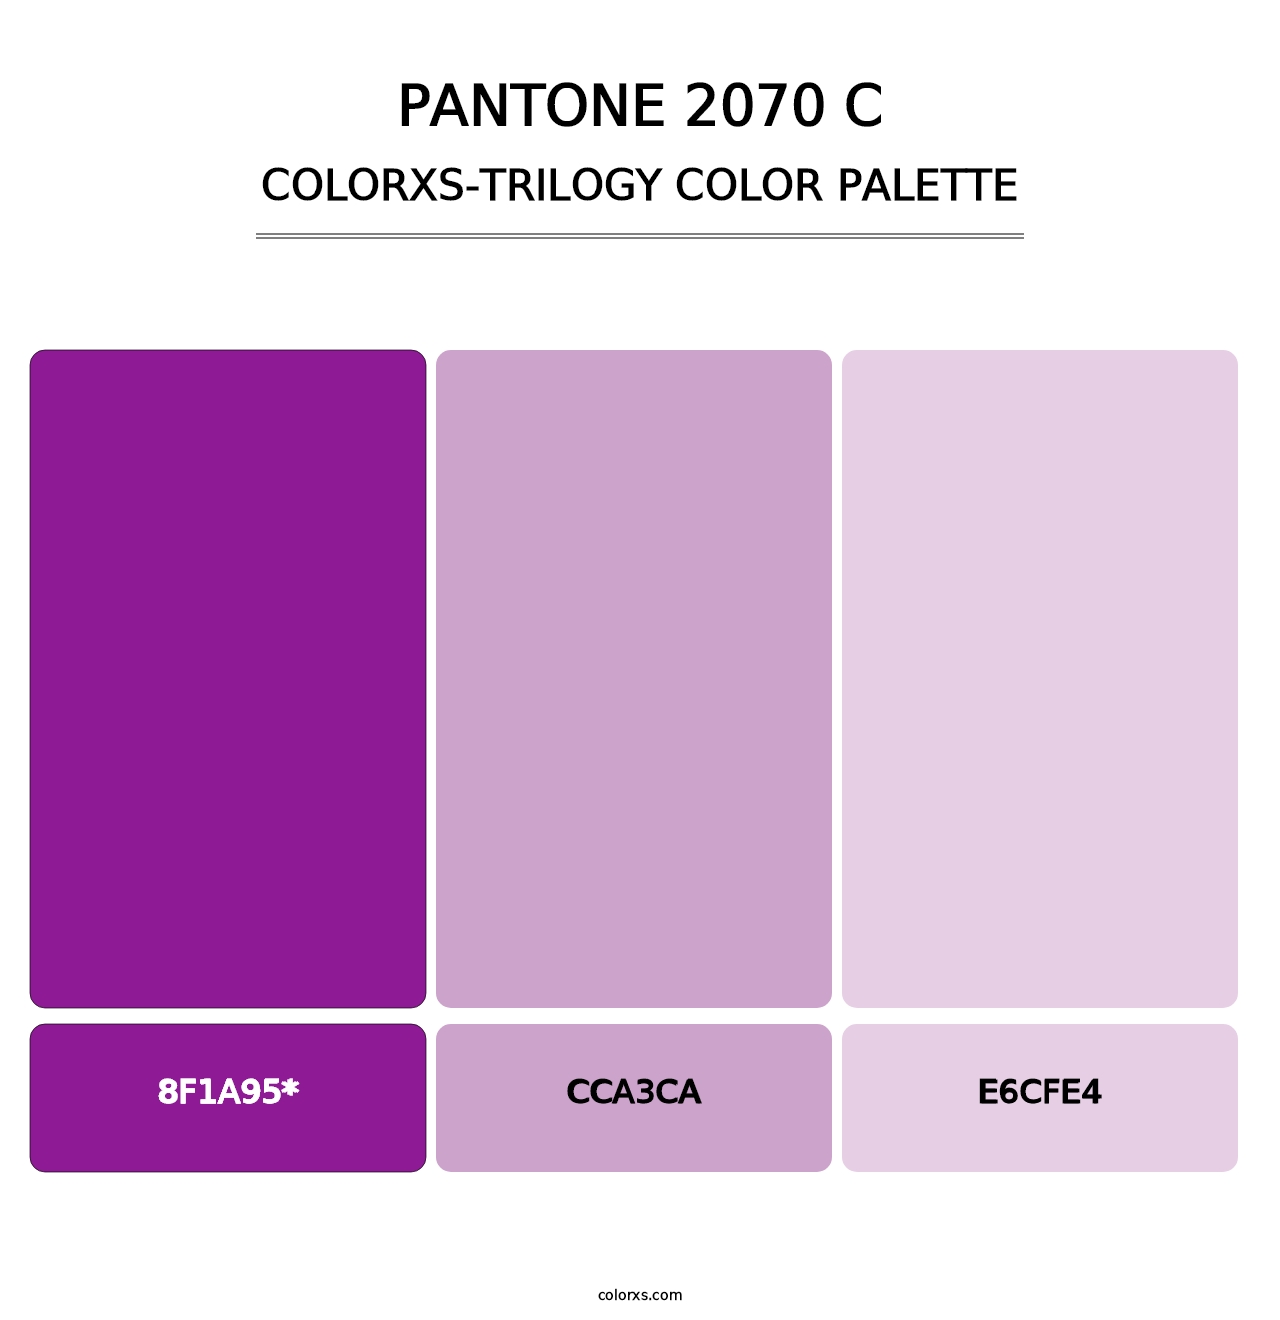 PANTONE 2070 C - Colorxs Trilogy Palette